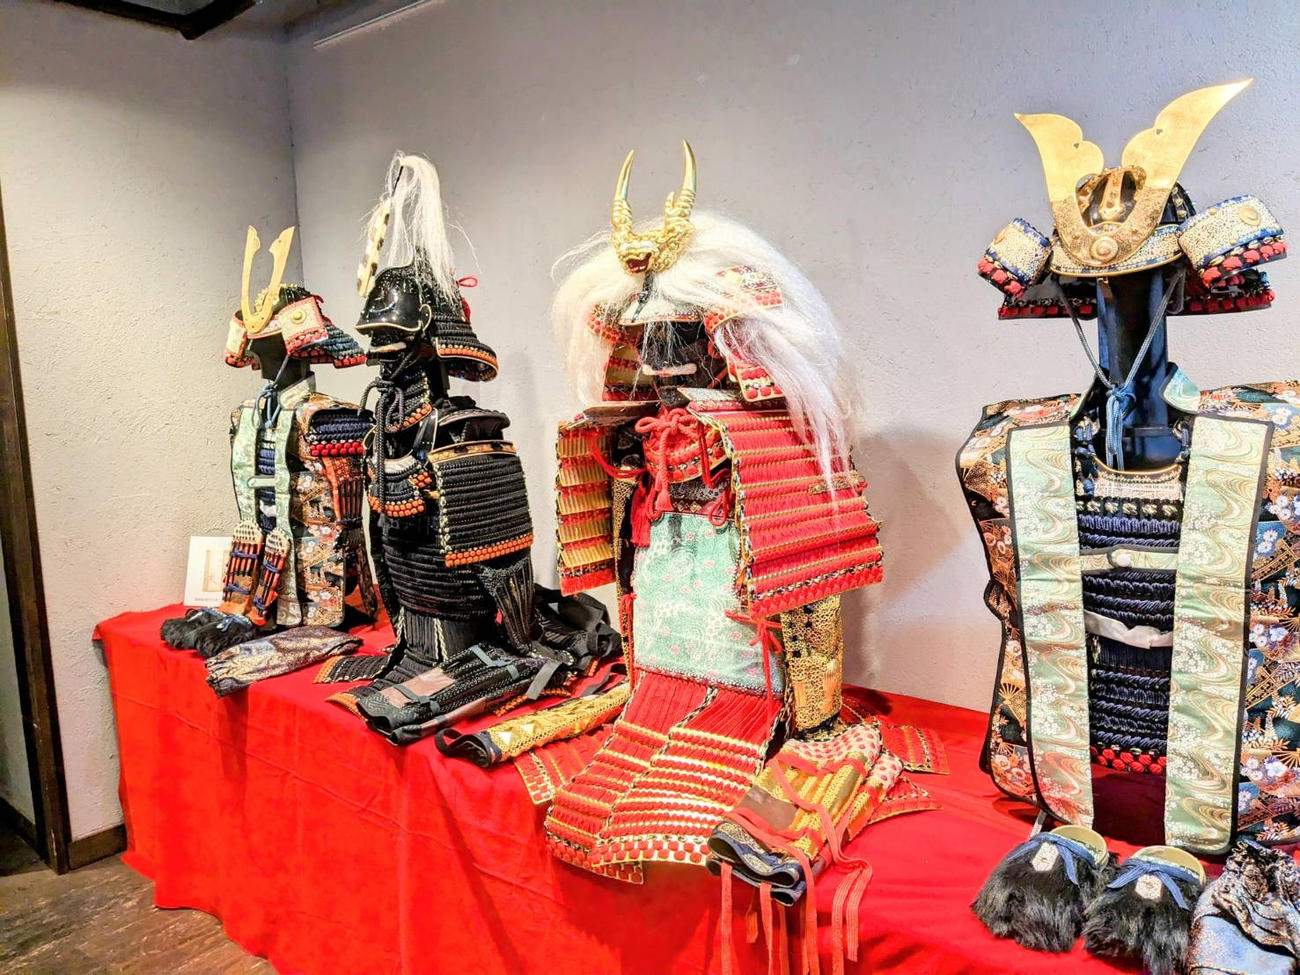 「SAMURAIYA」に陳列された戦国武将の甲冑。左から2番目が織田信長、3番目が武田信玄